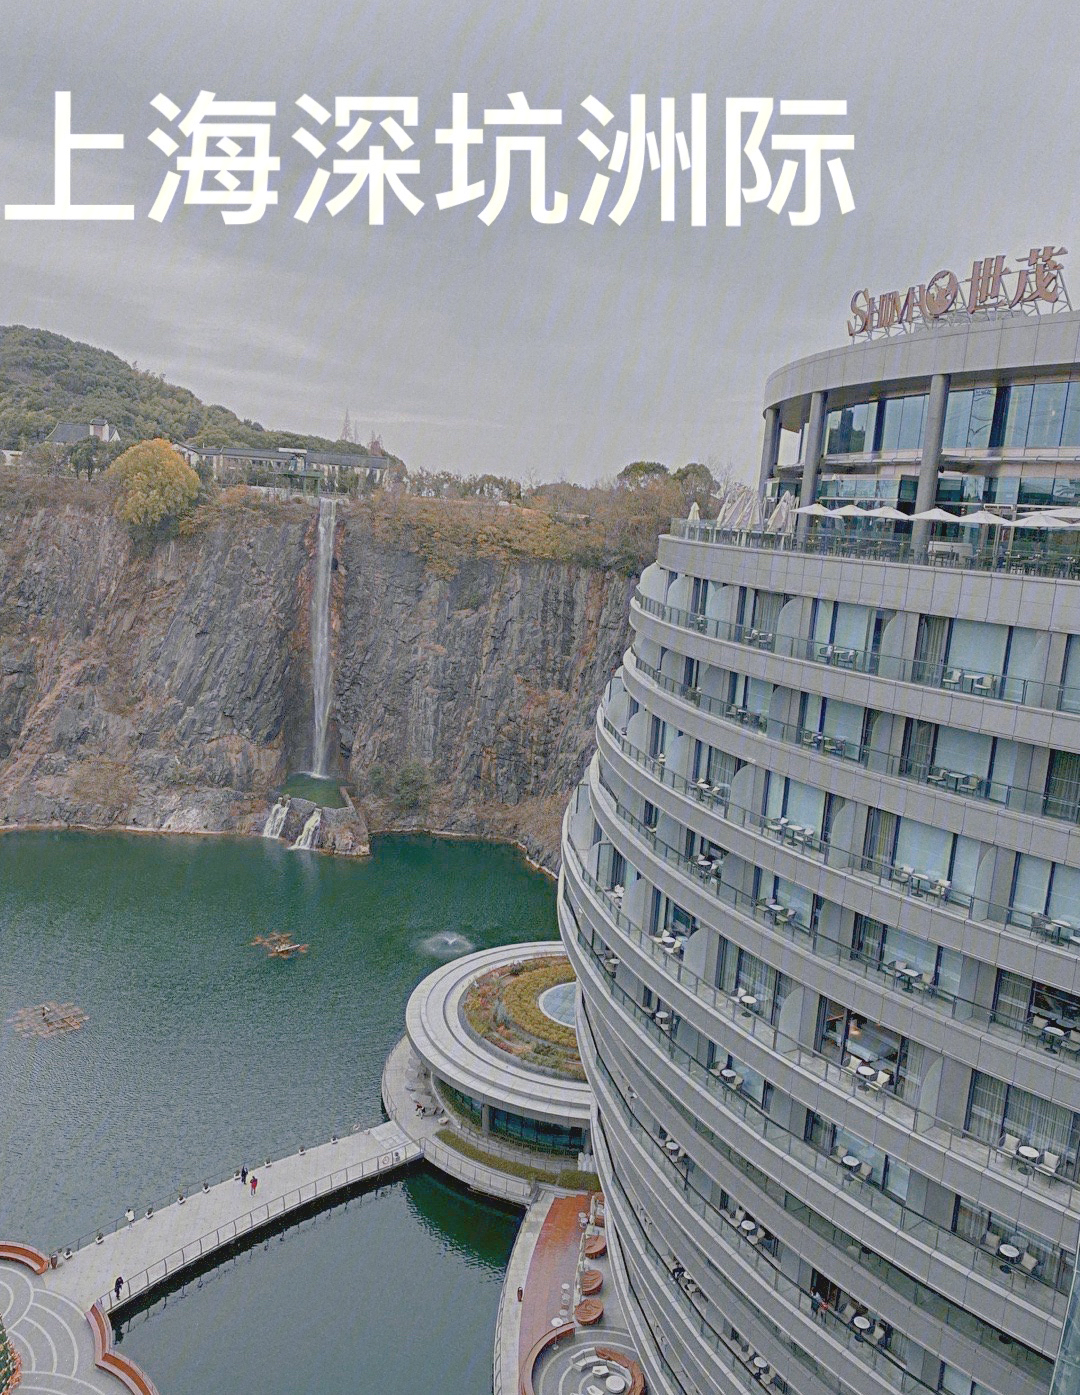 超值60上海深坑洲际酒店六折即可入住73